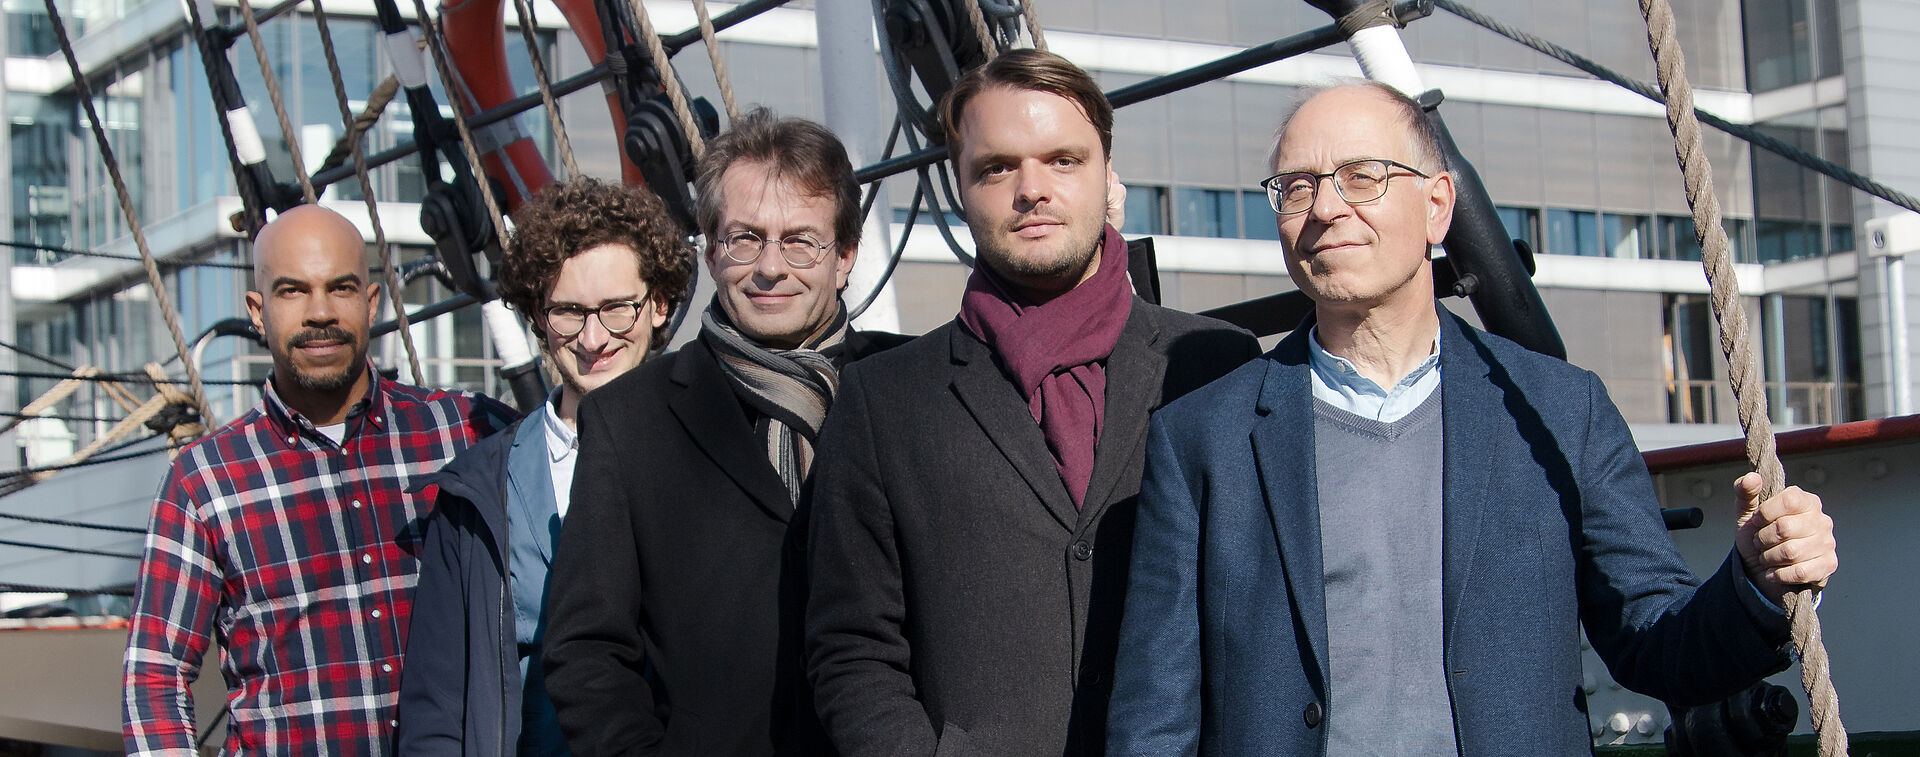 Orchester-Team des Stadttheaters Bremerhaven, bestehend aus fünf männlichen Personen. Sie stehen leicht hintereinander platziert auf einem Schiff.